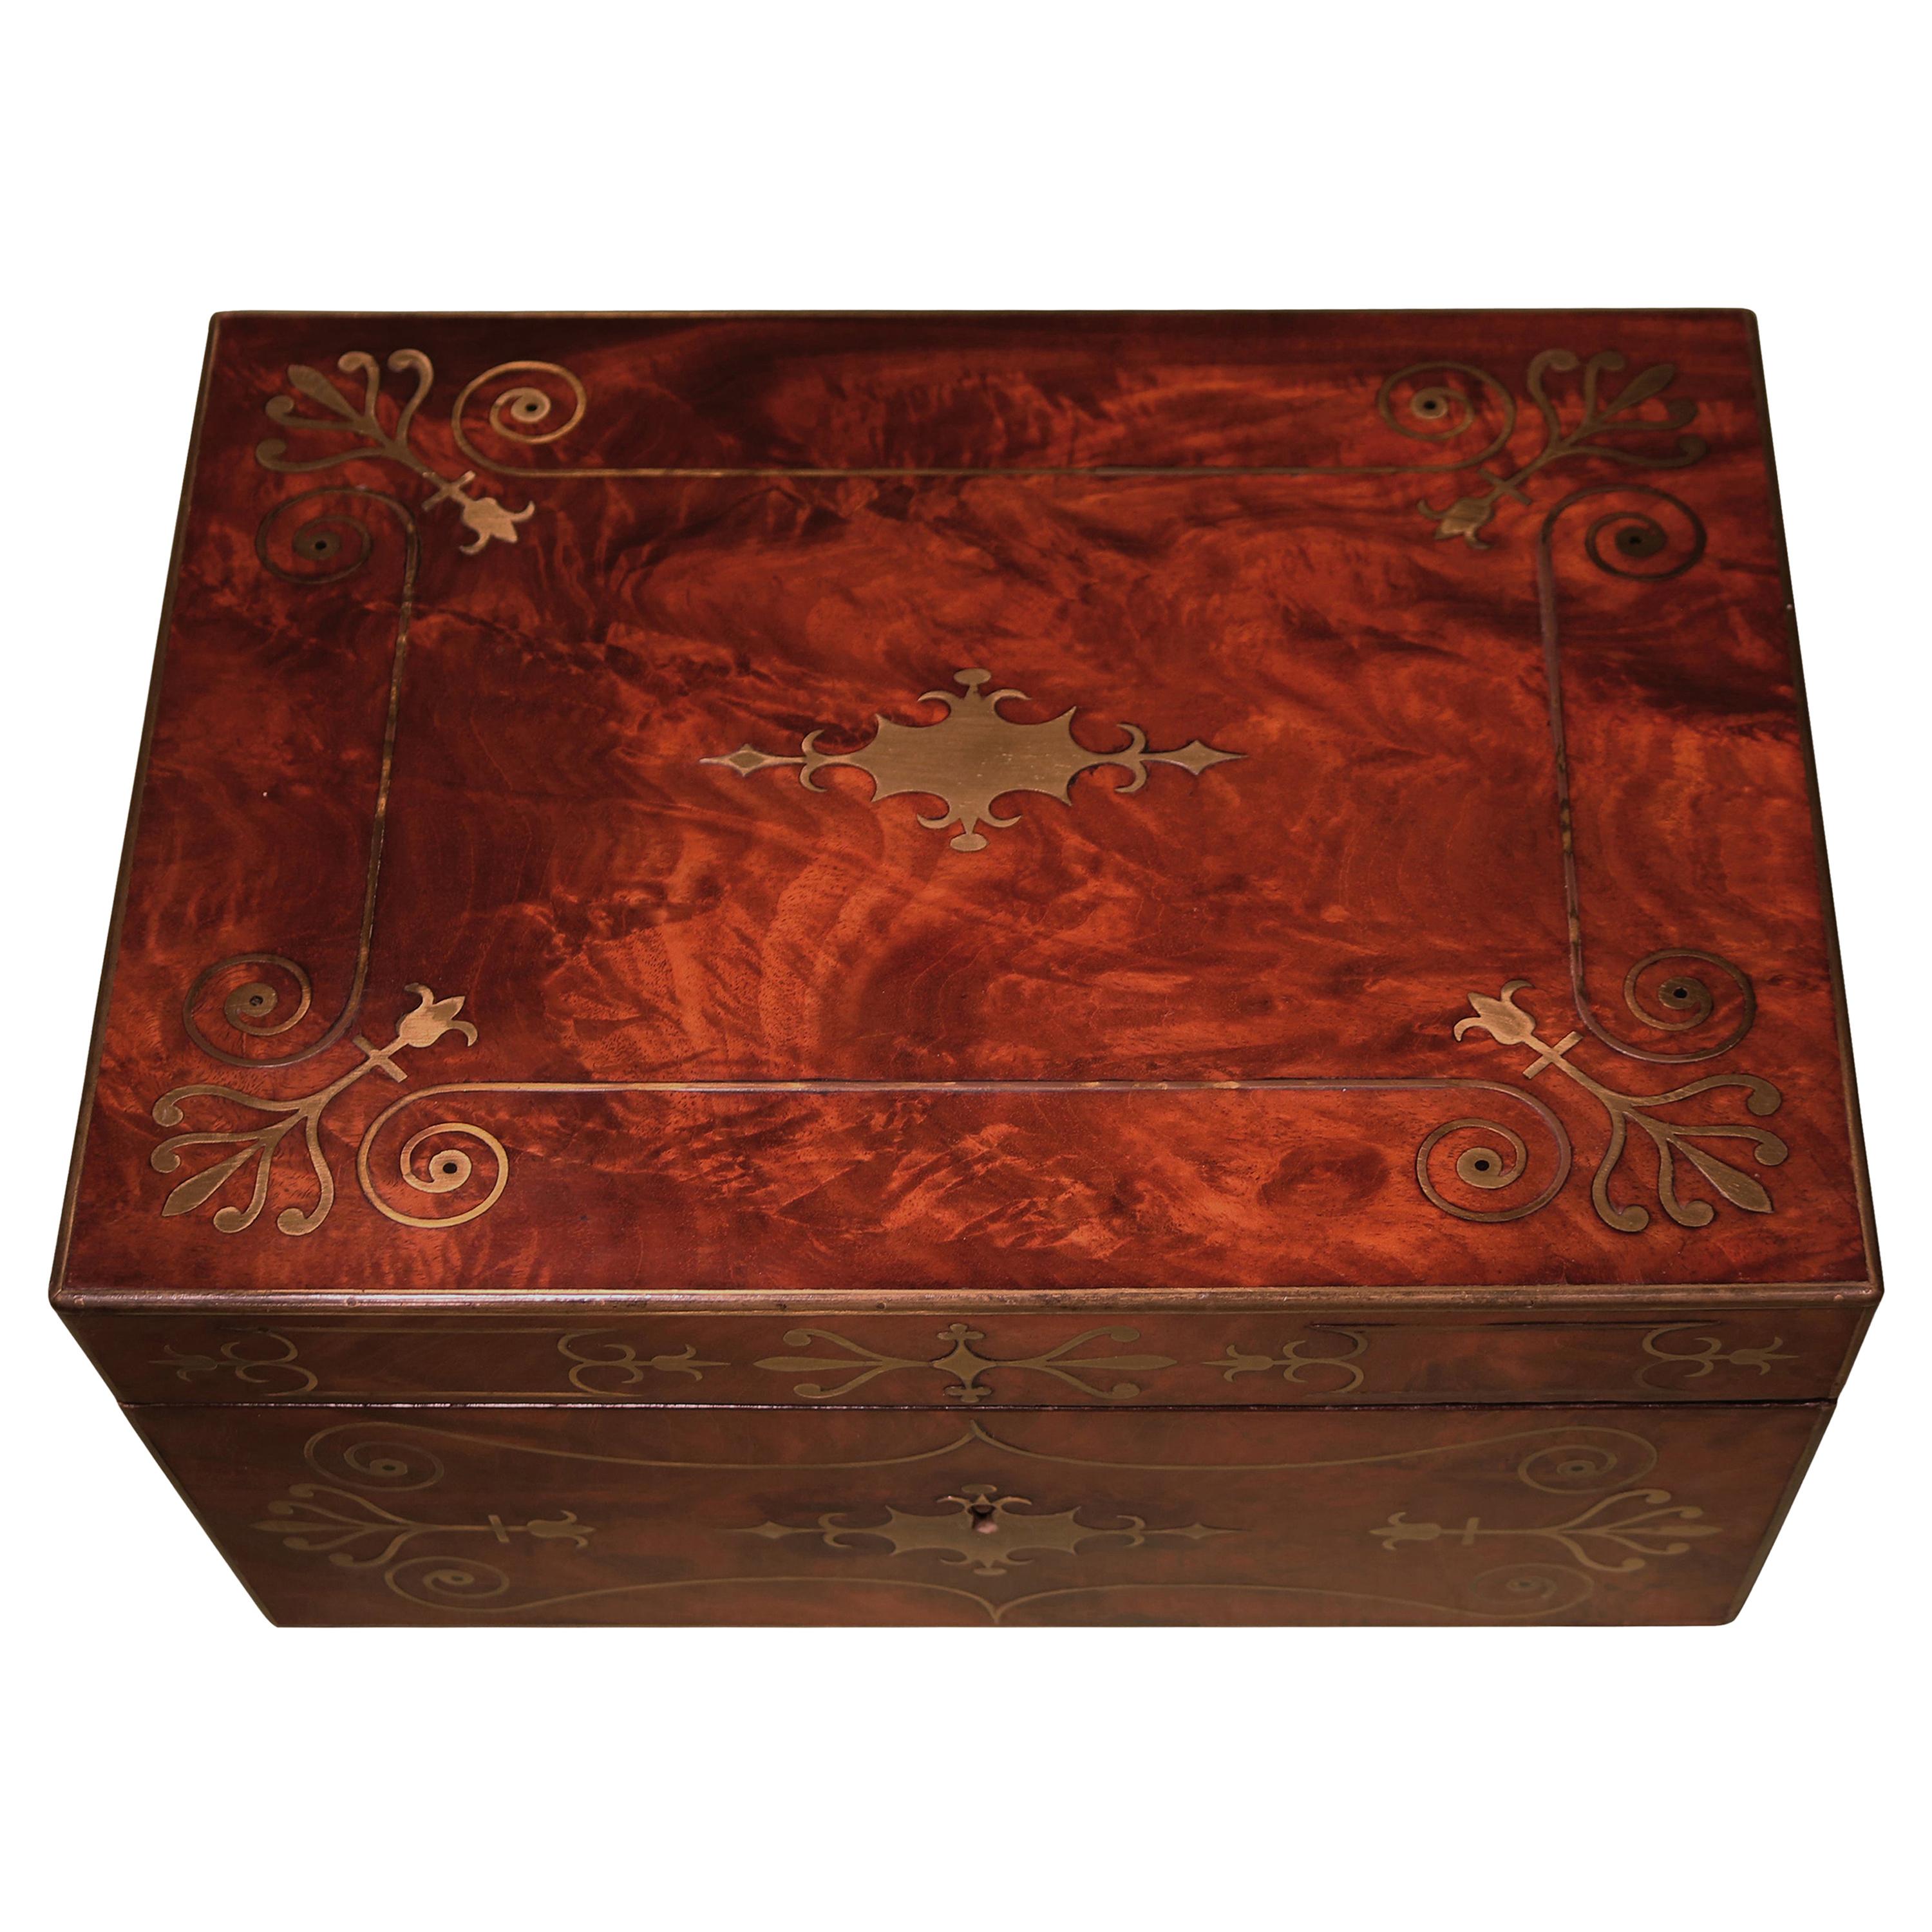 Early 19th Century Regency Period Mahogany Stationary Box